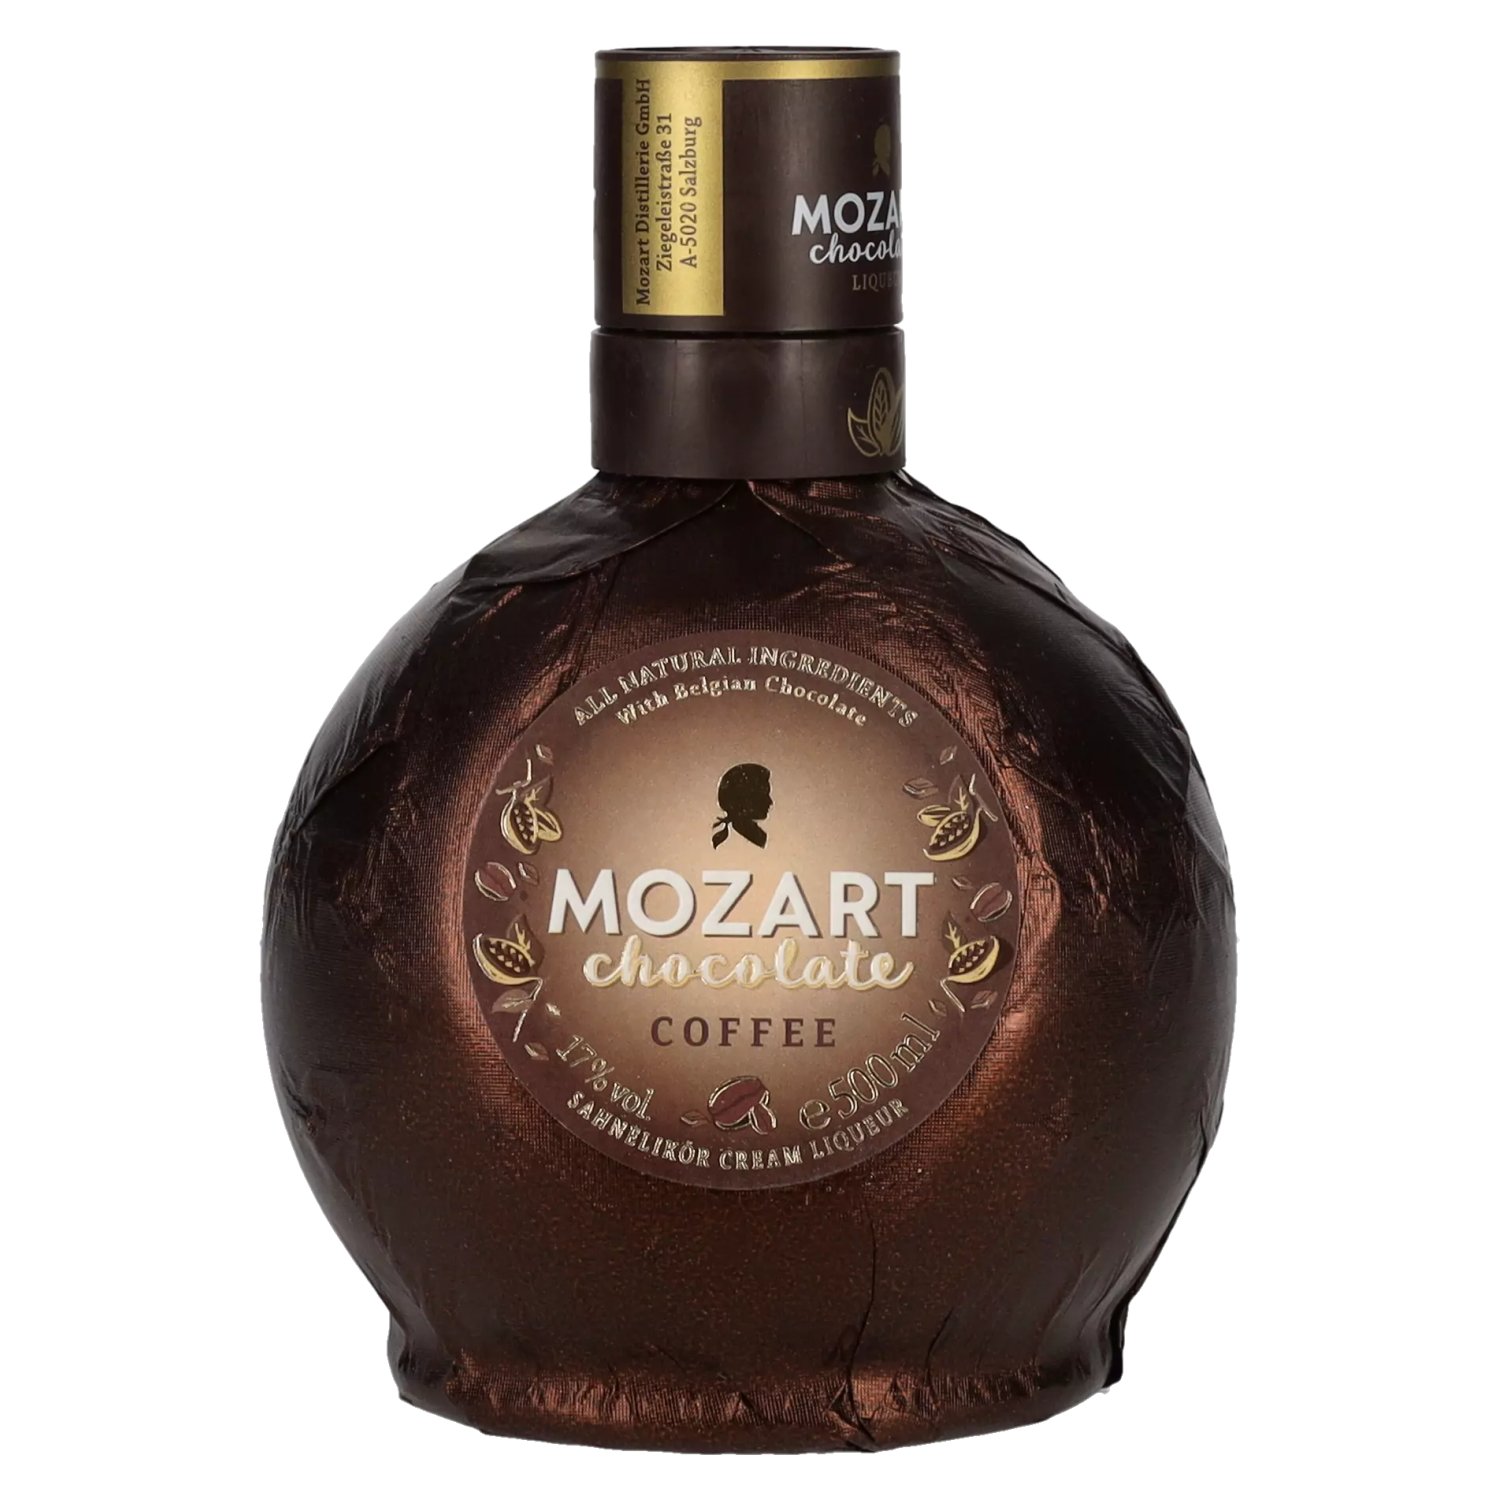 Mozart Chocolate Coffee 17% Vol. 0,5l - delicando